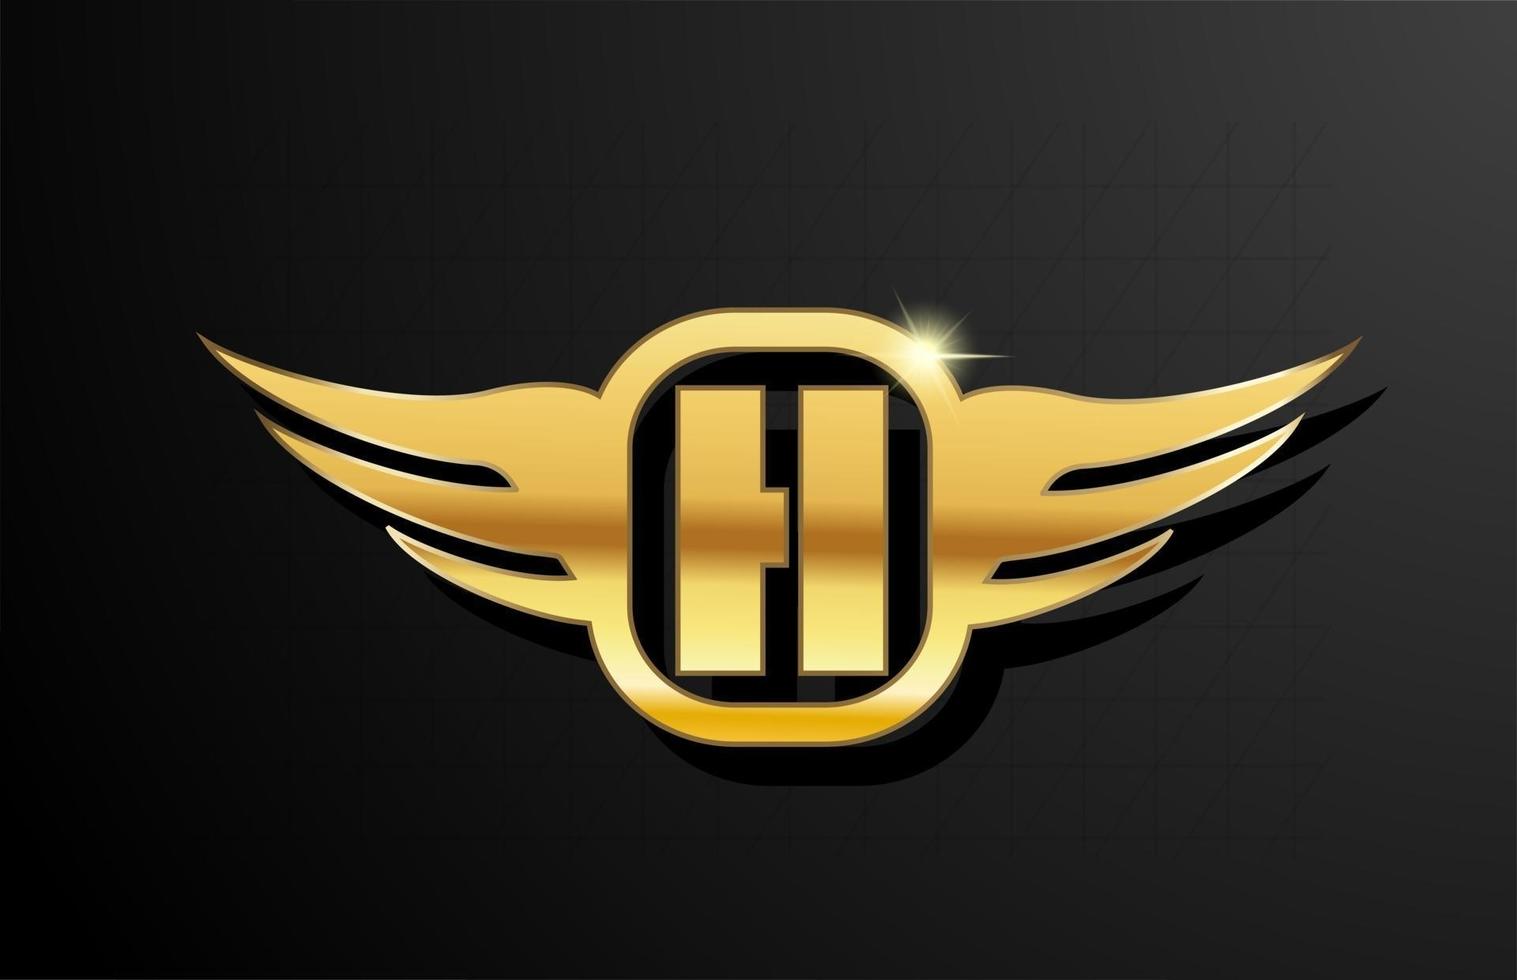 Alfabeto del logo de letra h oro para negocios y empresa con color amarillo. Brading corporativo y rotulación con diseño de metal dorado y ala. vector